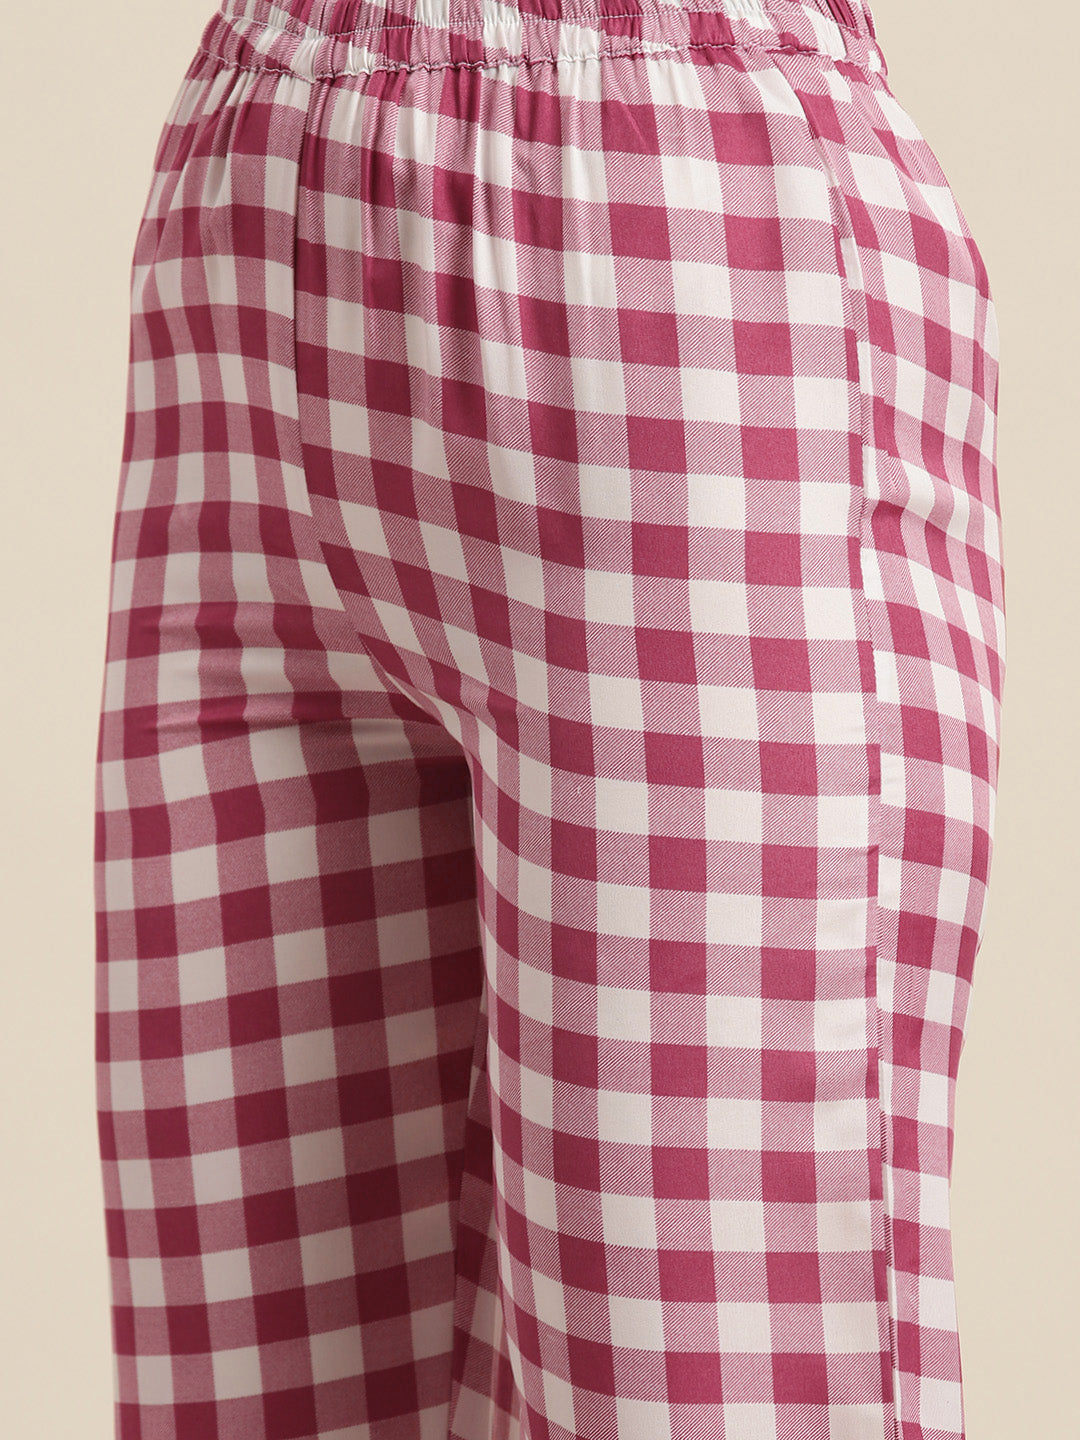 Pink & white check crepe shirt and pant set.